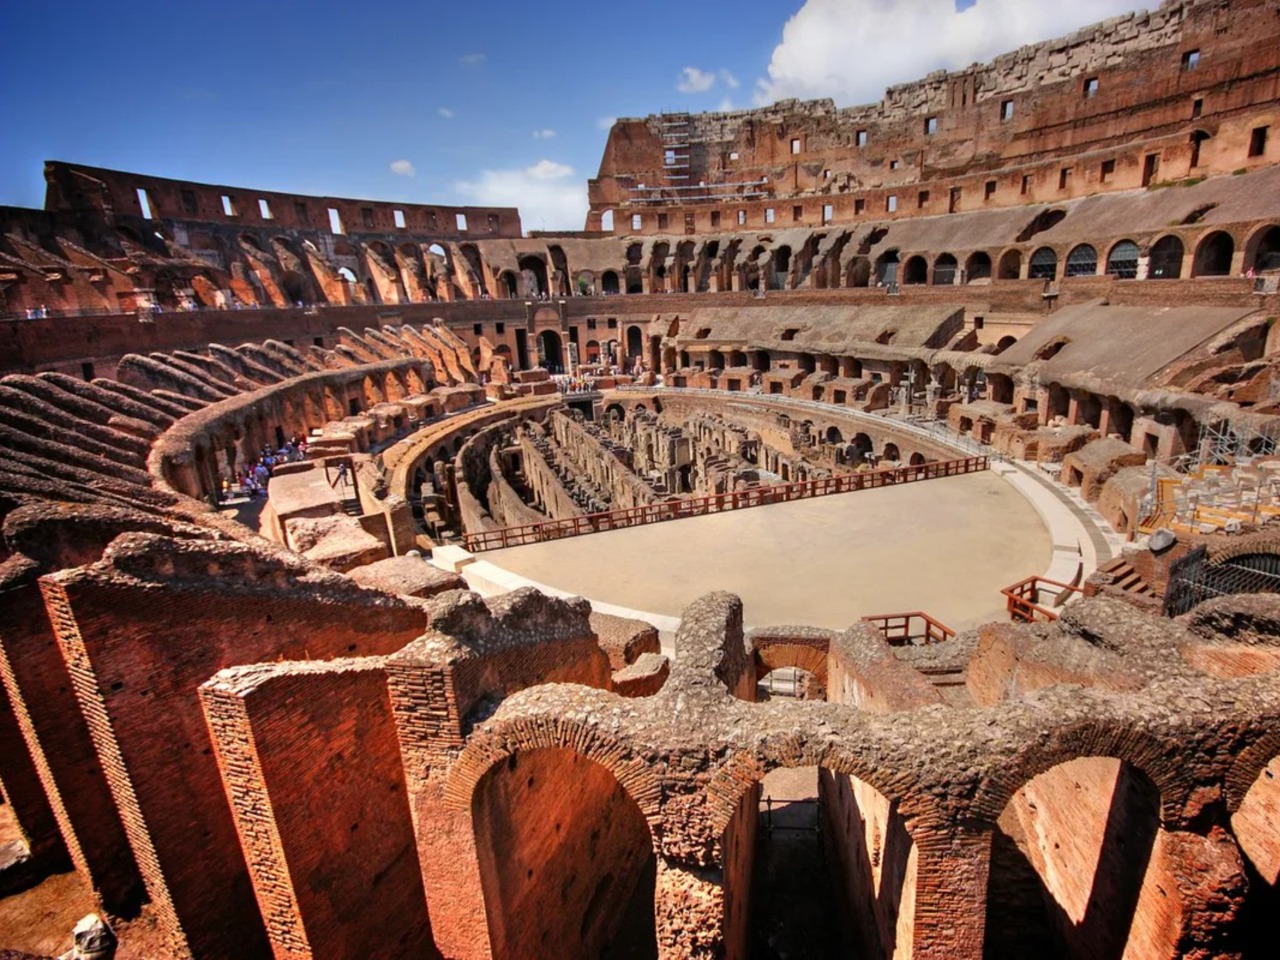 Колизей — арена гладиаторов, зрелищ и страстей | Цена 300€, отзывы, описание экскурсии